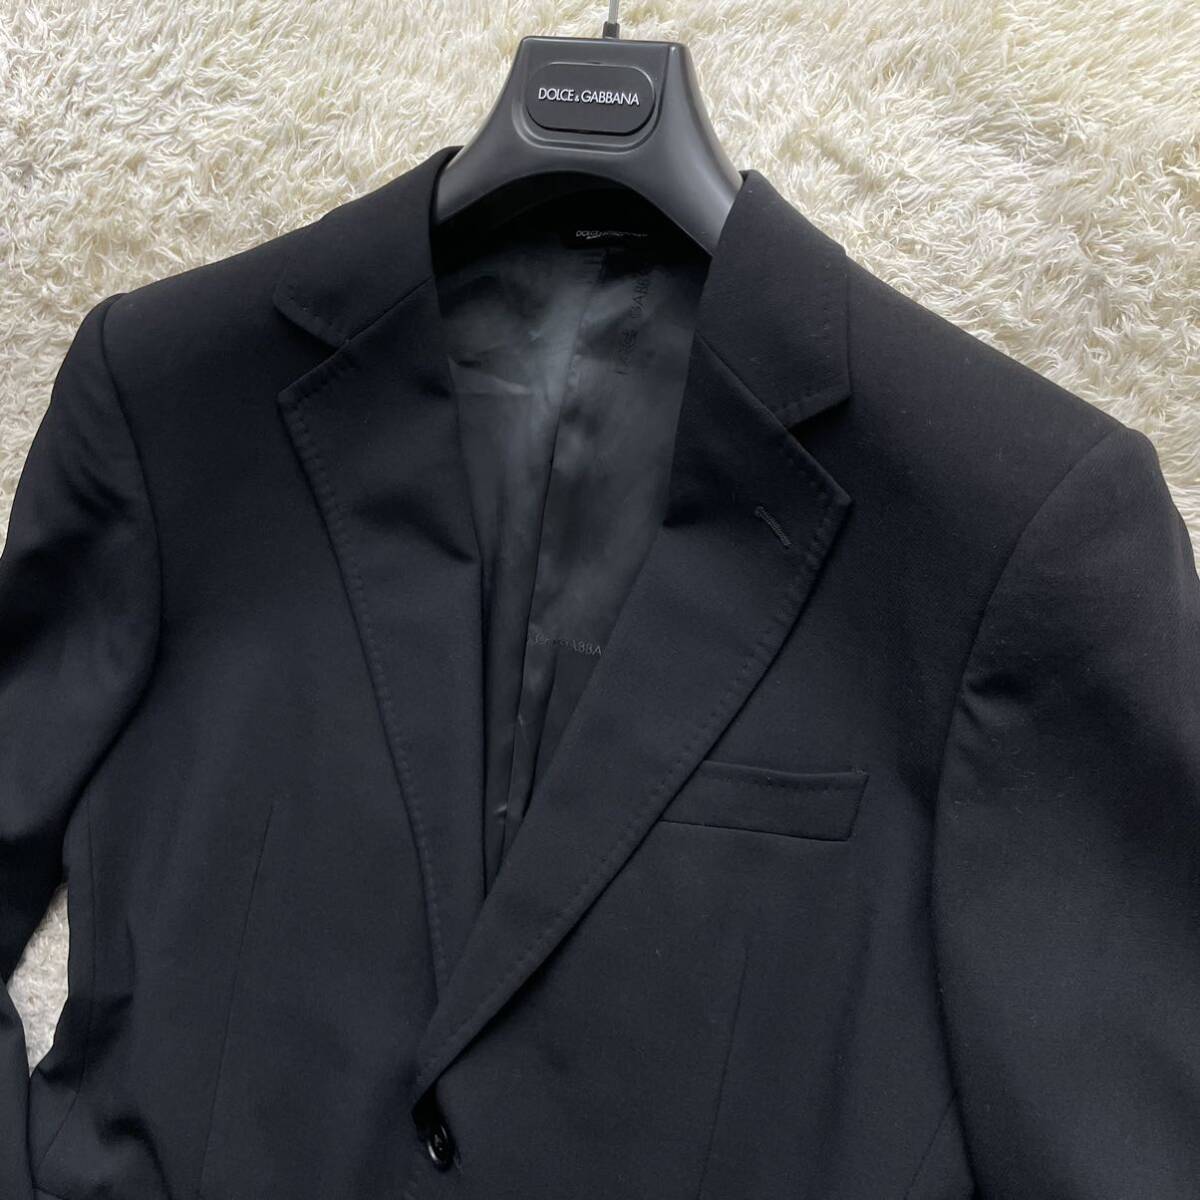  редкий XL размер соответствует Dolce & Gabbana [ лаковый черным очарован цвет .]DOLCE&GABBANA tailored jacket смокинг summer жакет черный 50